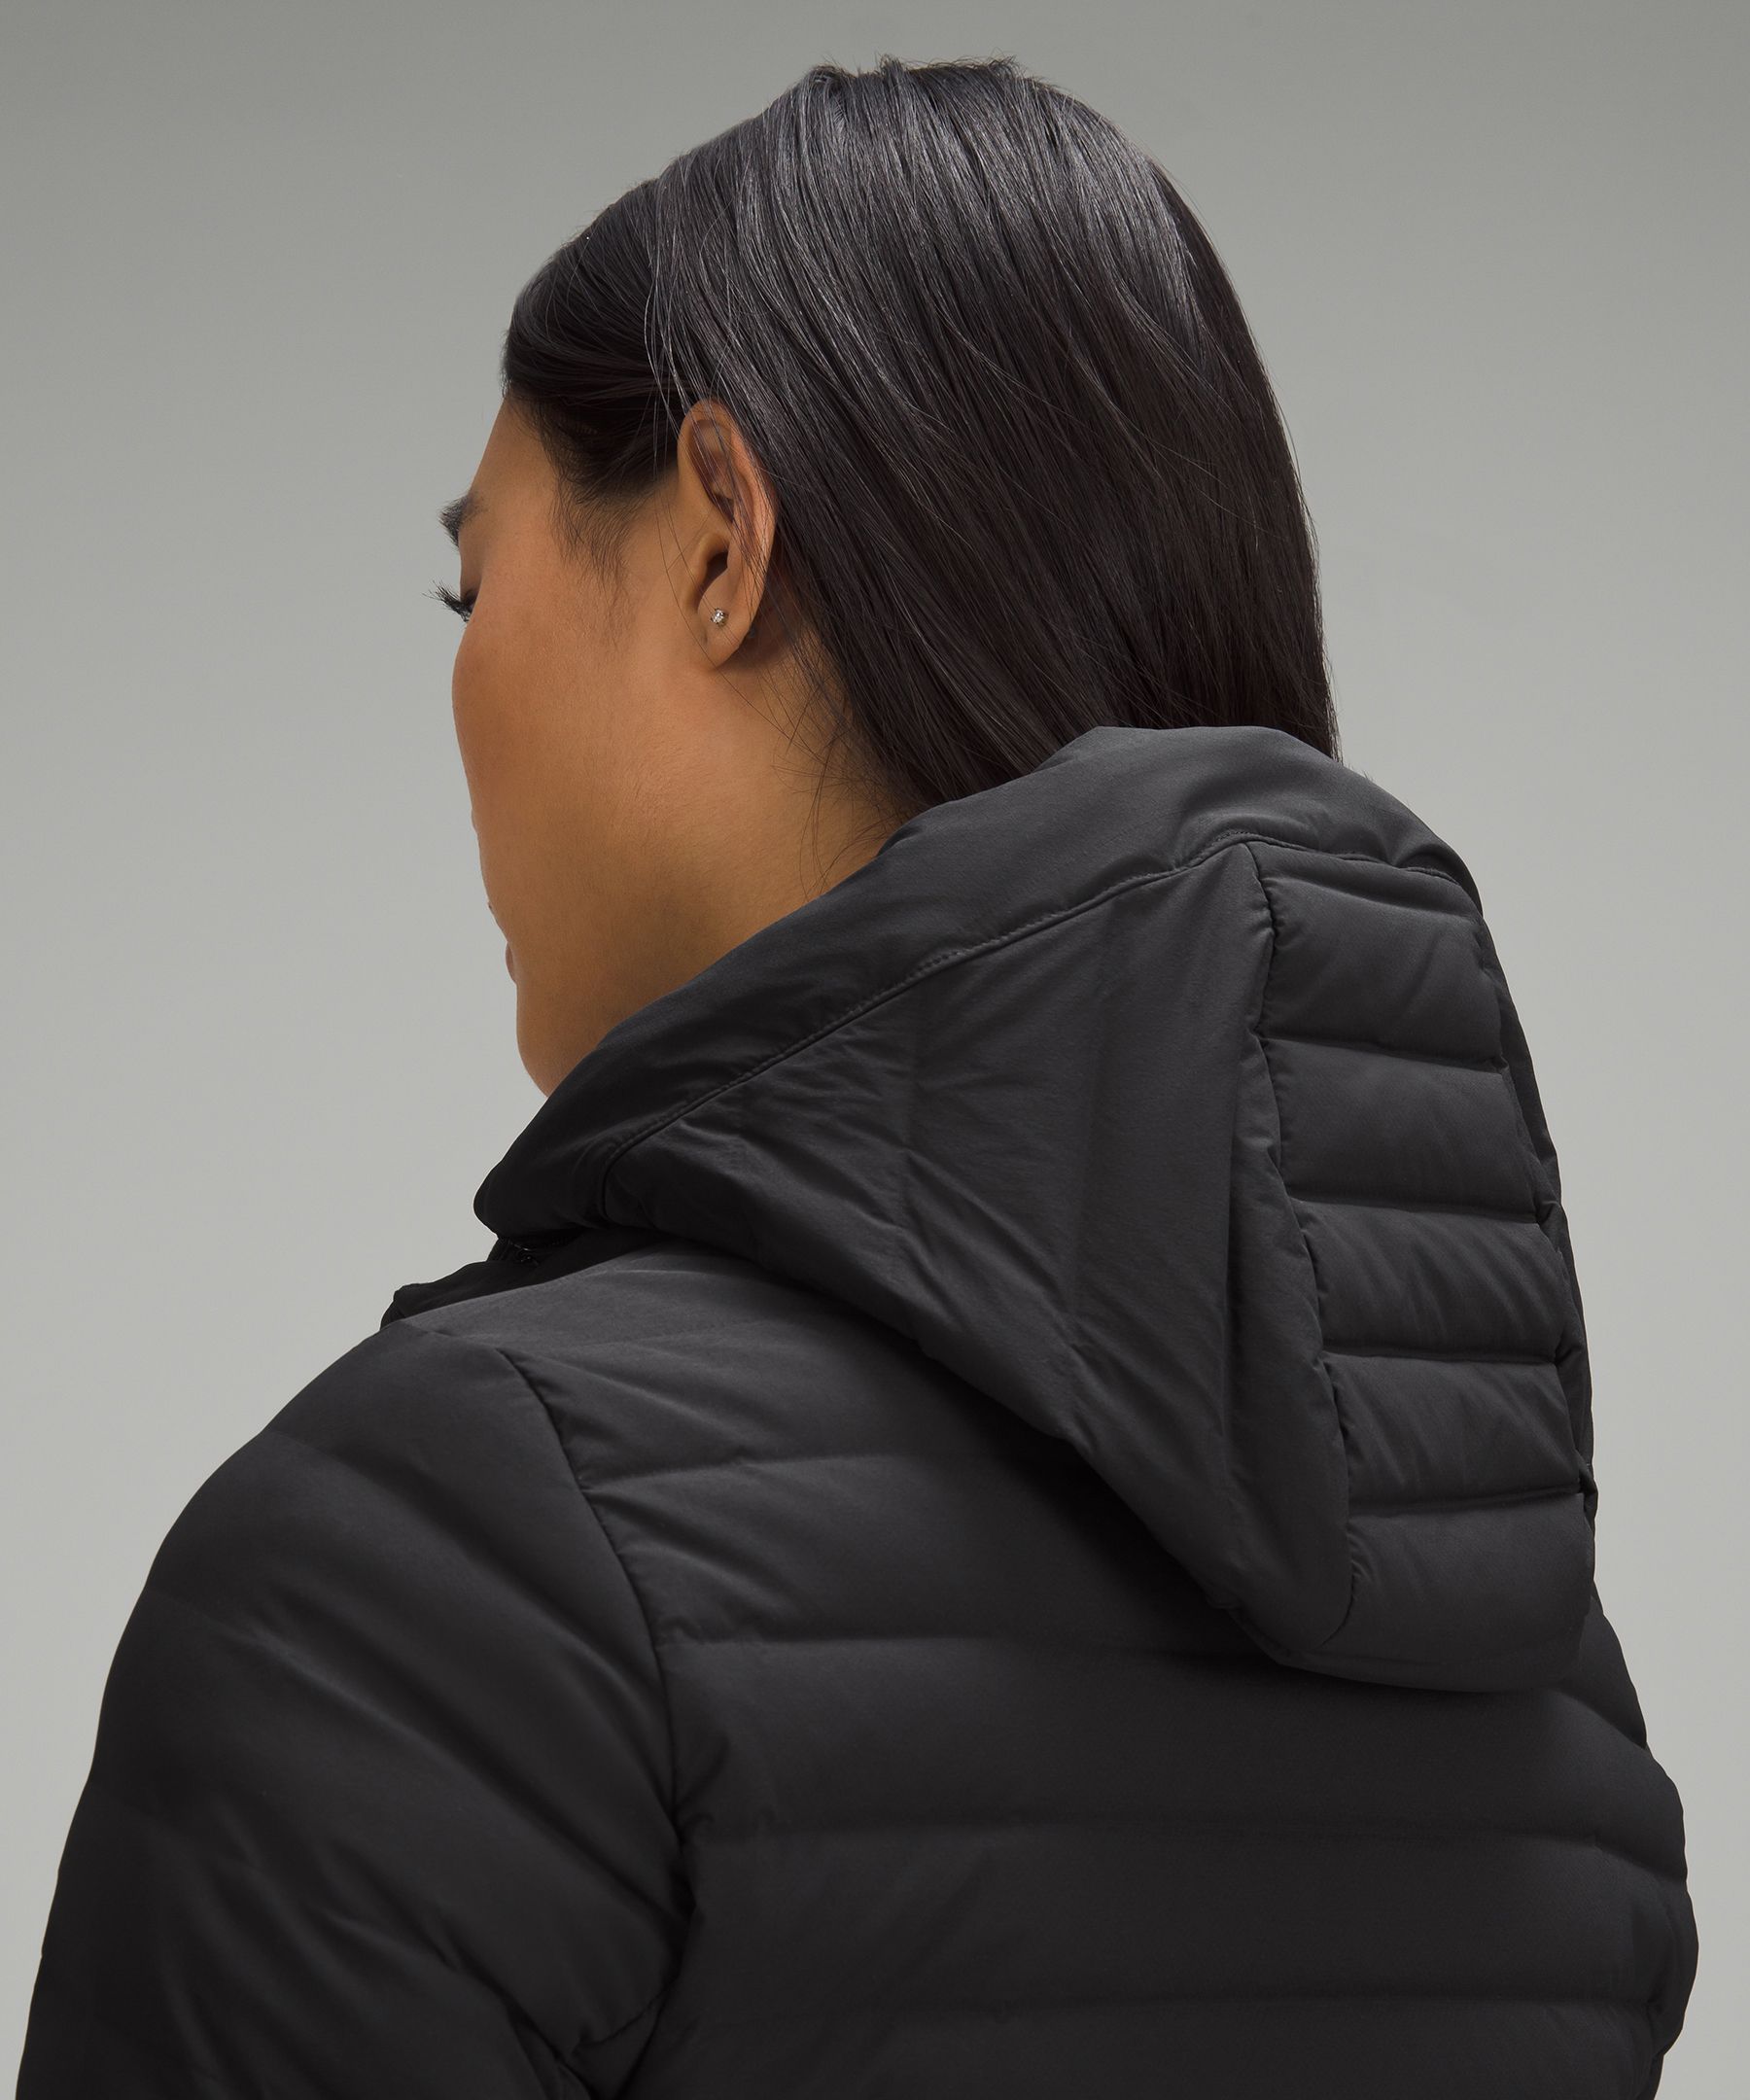 Pack It Down Jacket | Women's Coats & Jackets | lululemon